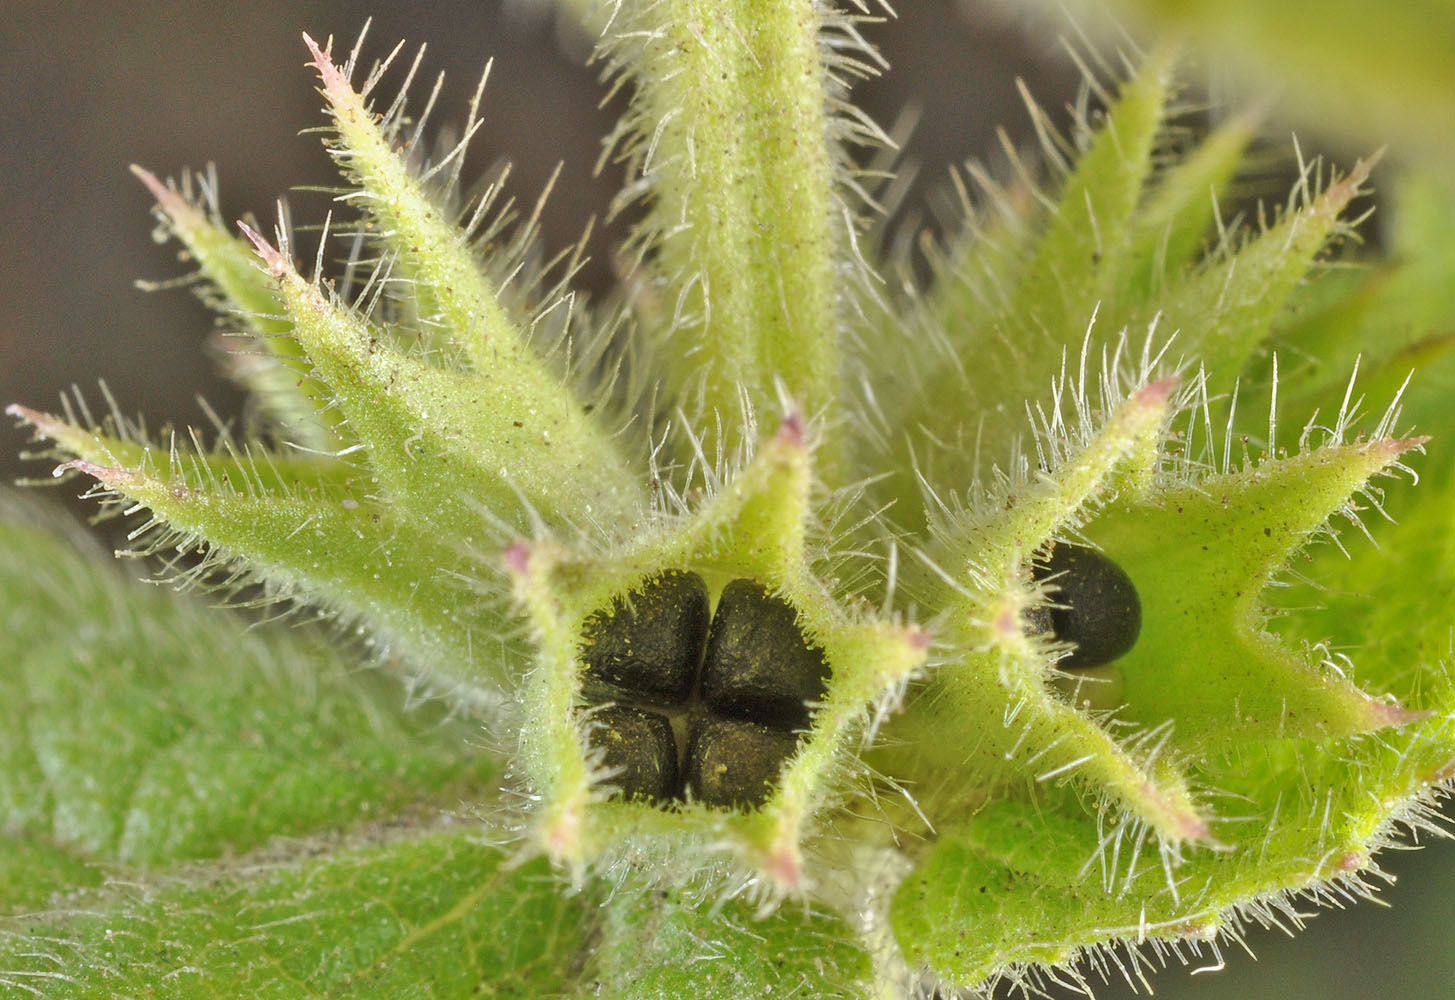 Flora of Eastern Washington Image: Stachys pilosa